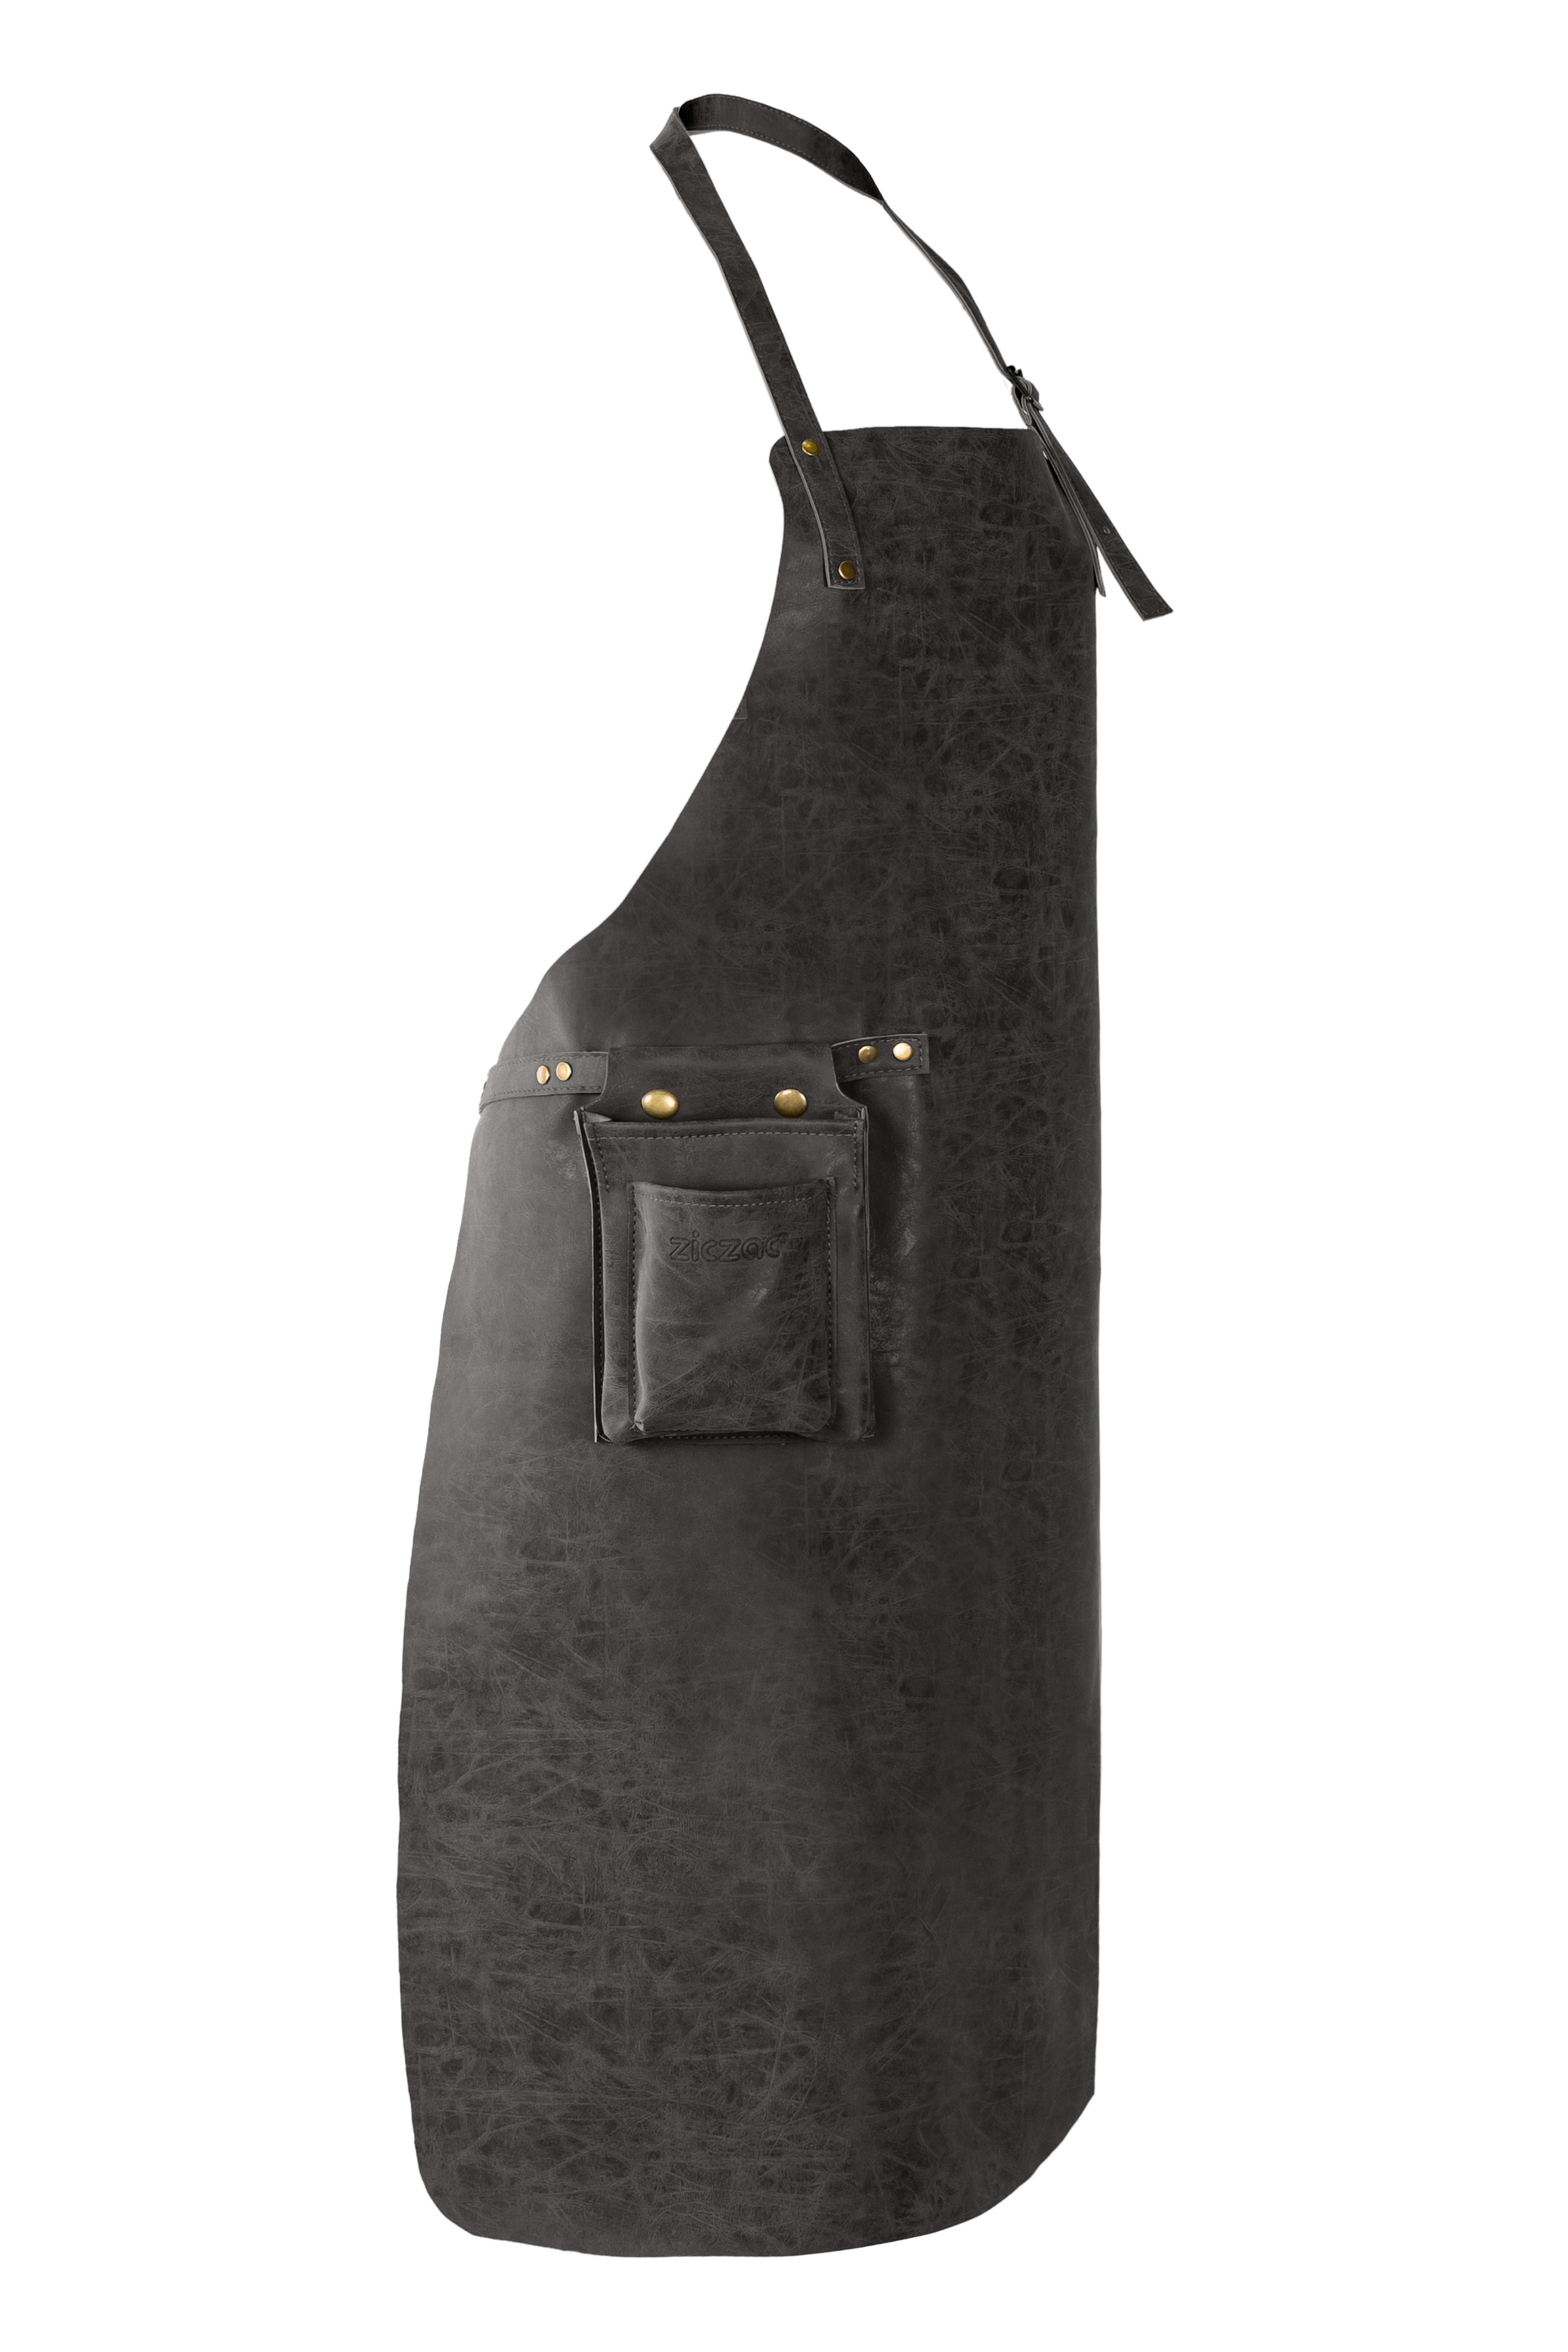 Schort TRUMAN (Towel loop - no pocket - opt. Accessory bag), 70x90 cm, black